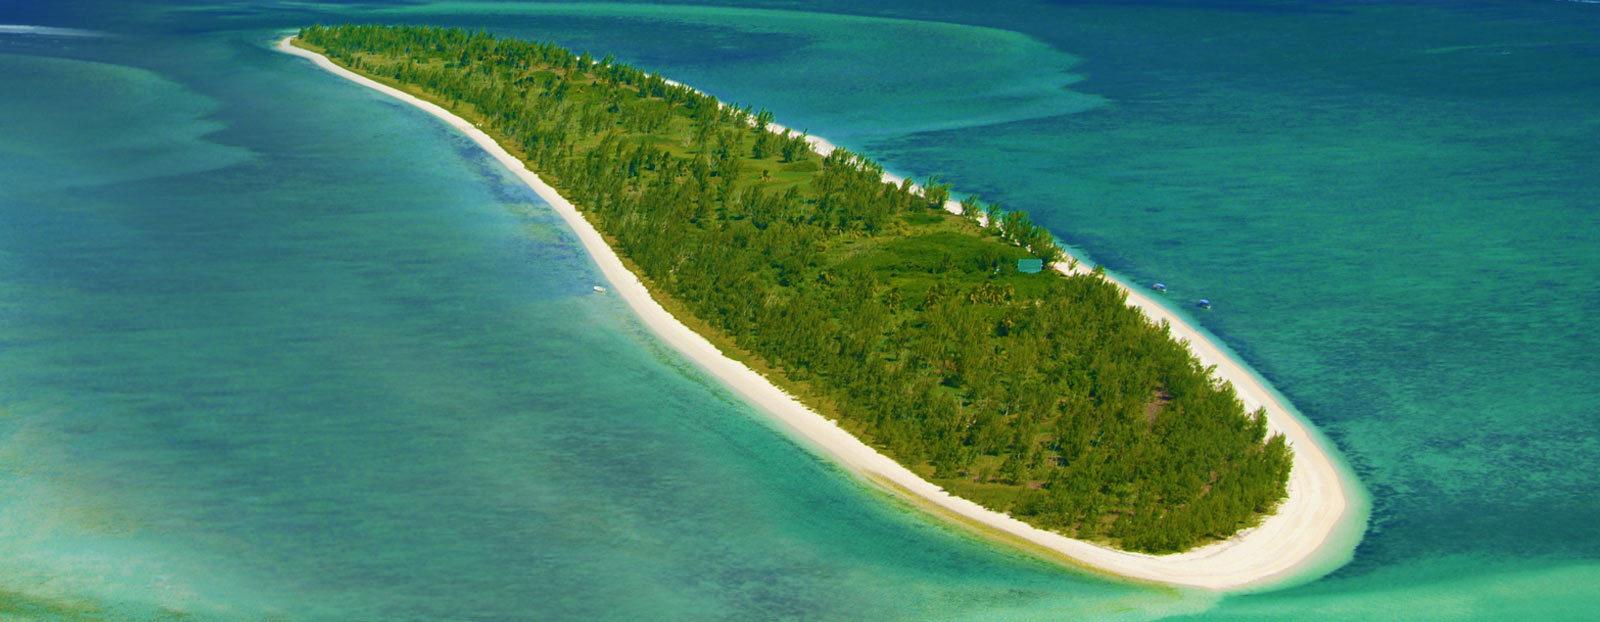 L’île aux cocos rodrigues